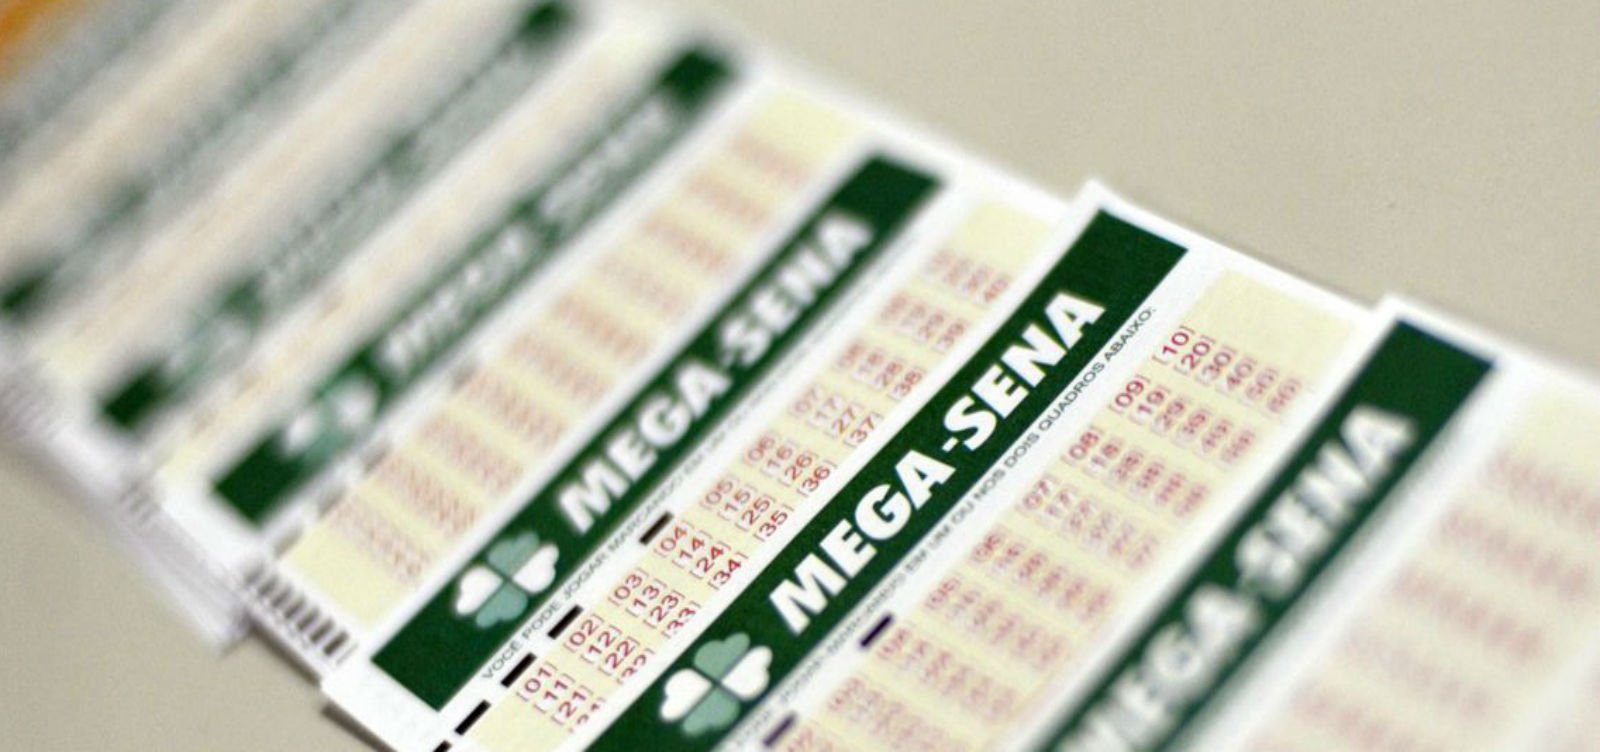 Aposta ganhadora da Mega-Sena foi feita em lotérica do bairro de Brotas